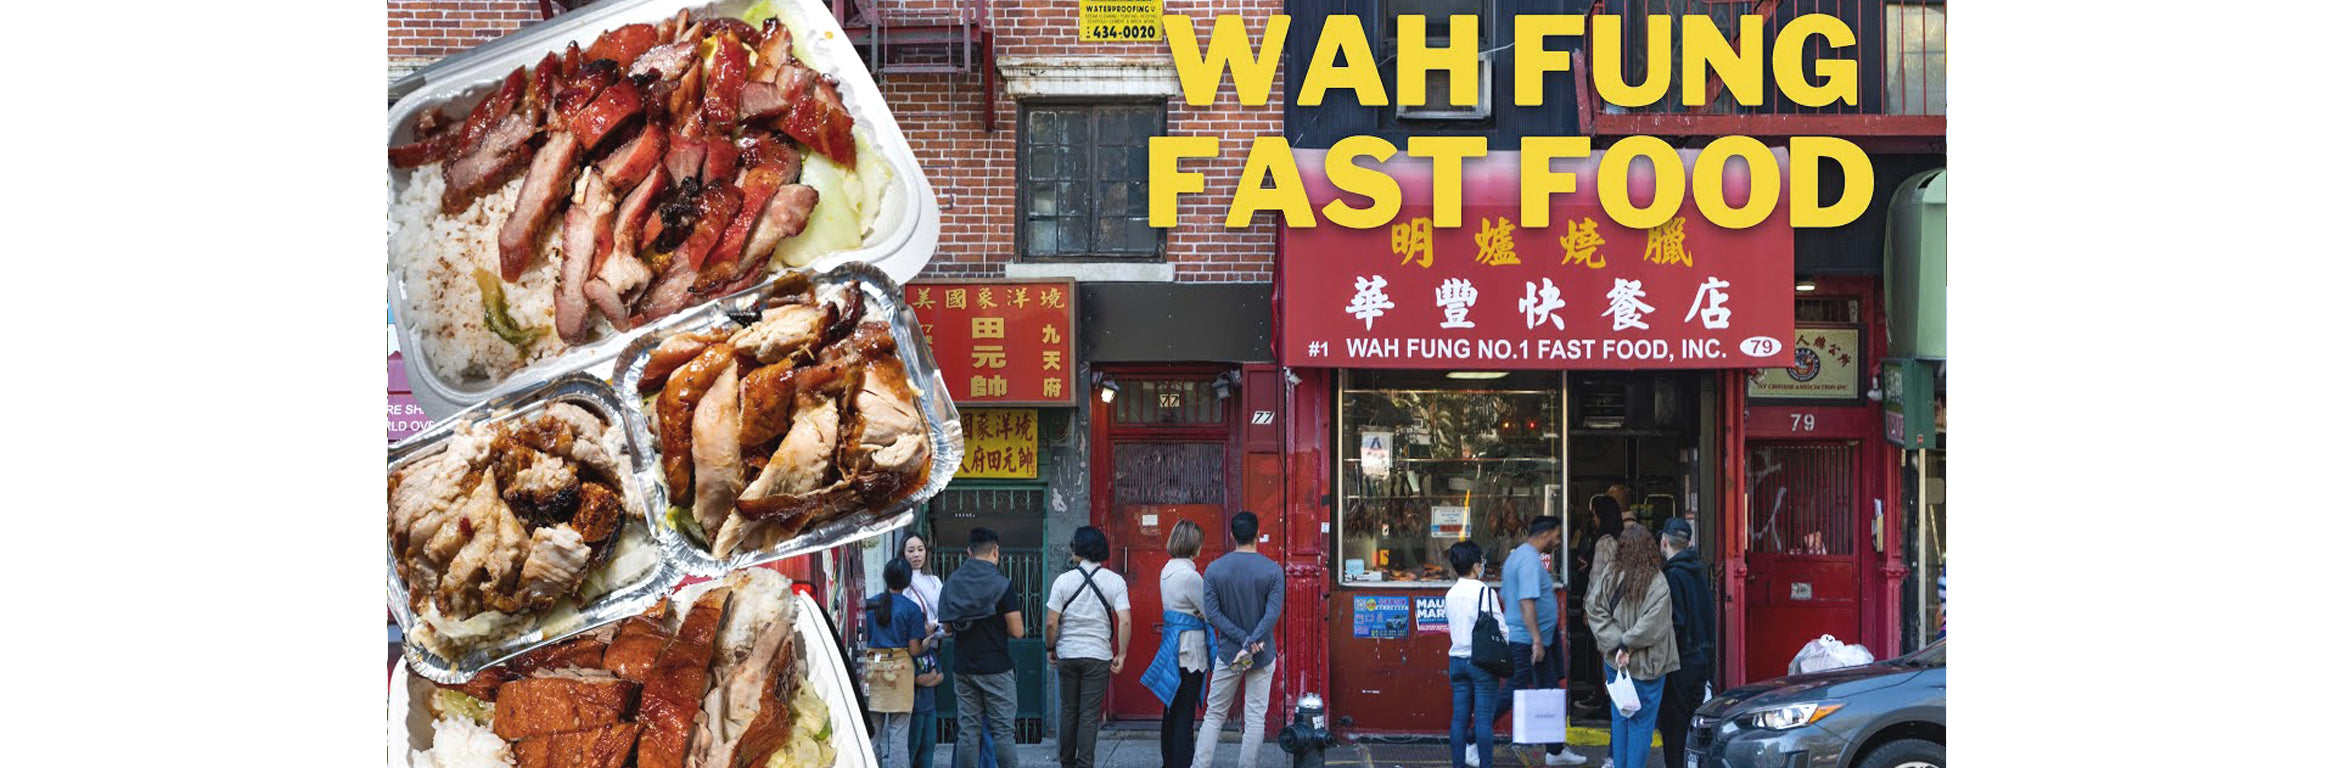 #1 Wah Fung No.1 Fast Food